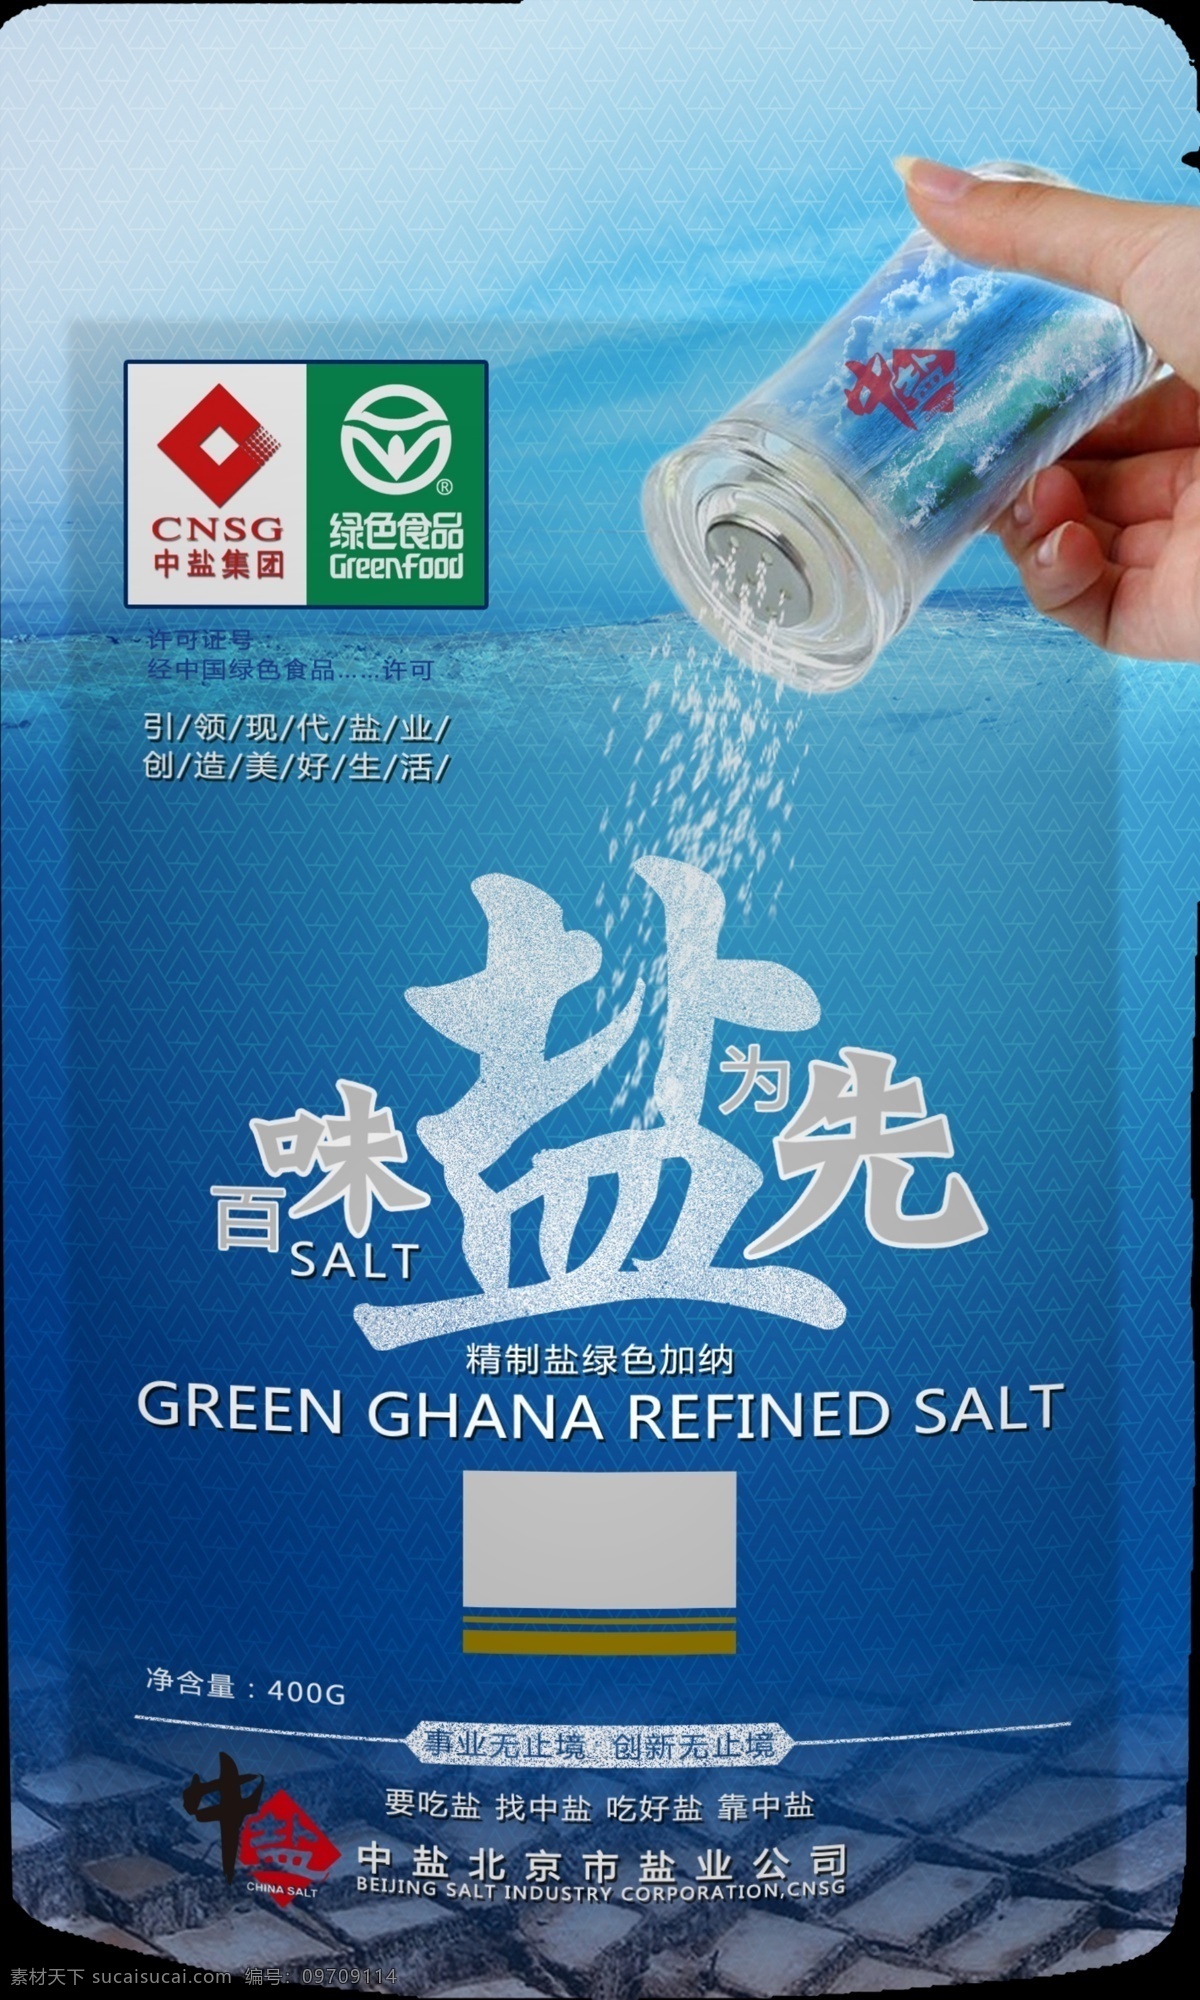 2014 中 盐 产品包装 效果图 中盐 包装设计 食品包装 食盐 调料包装 视觉形象 2014中盐